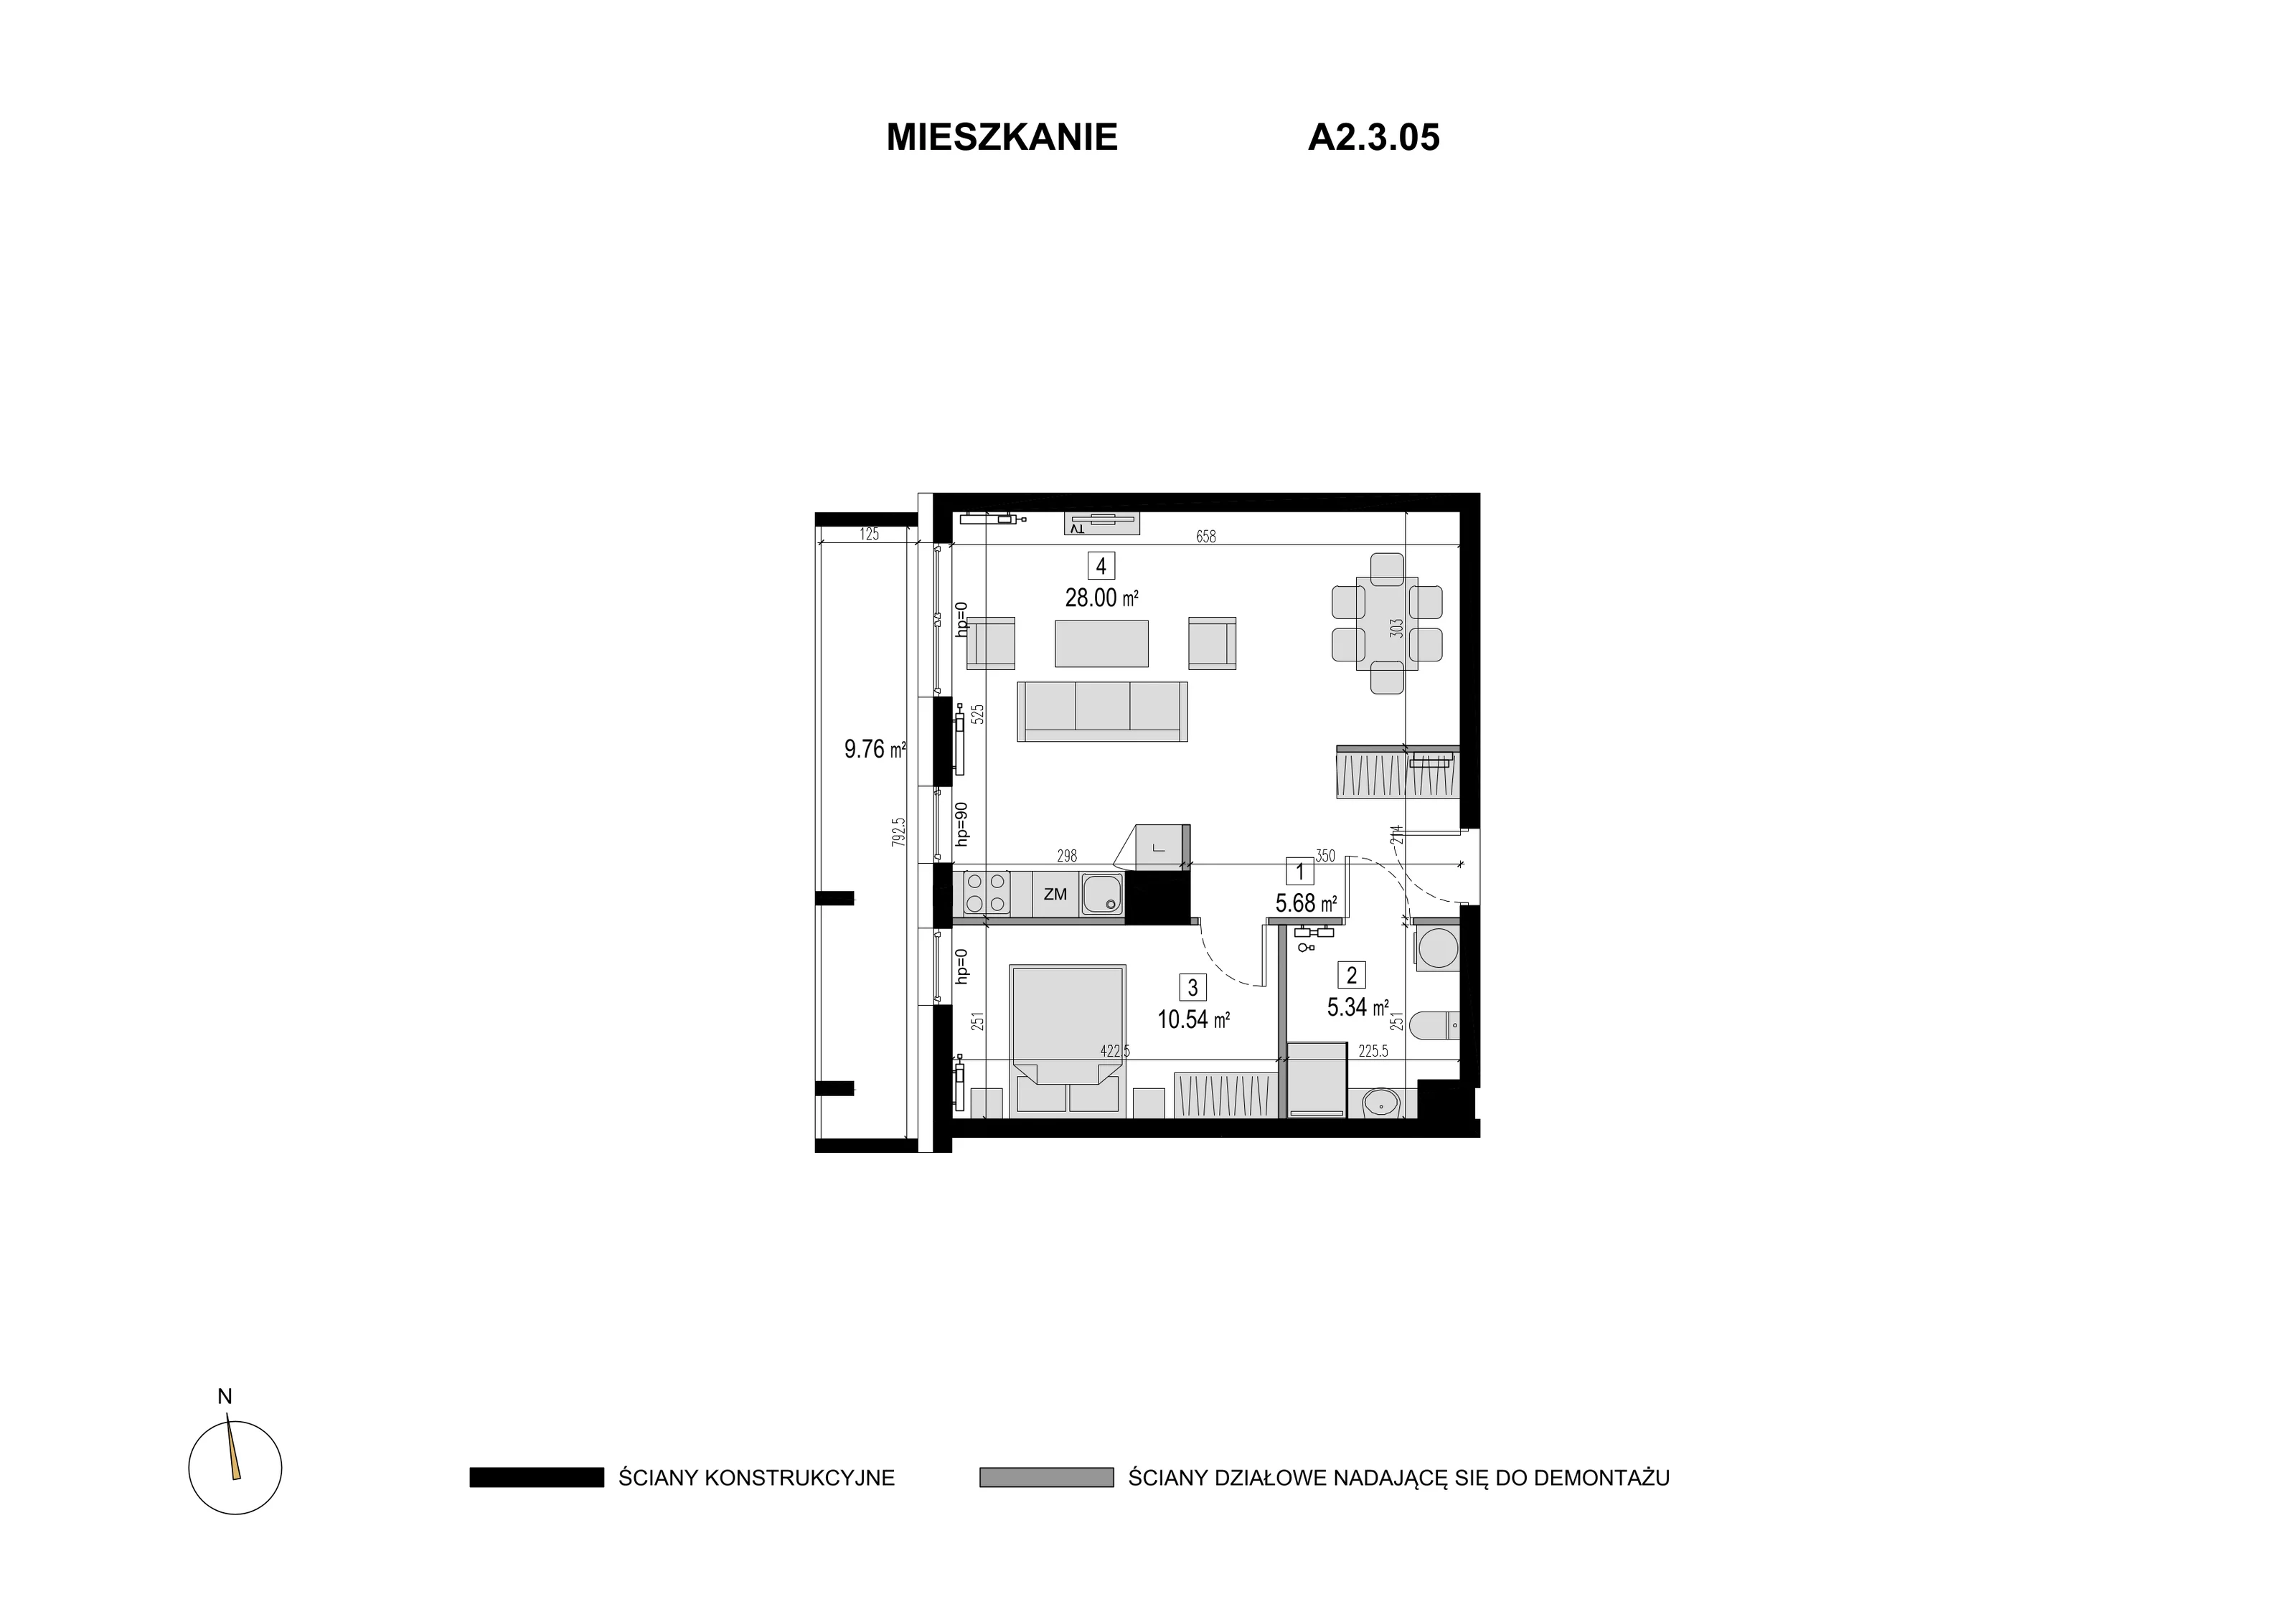 Mieszkanie 49,56 m², piętro 2, oferta nr A2.3.05, Novaforma, Legnica, ul. Chojnowska